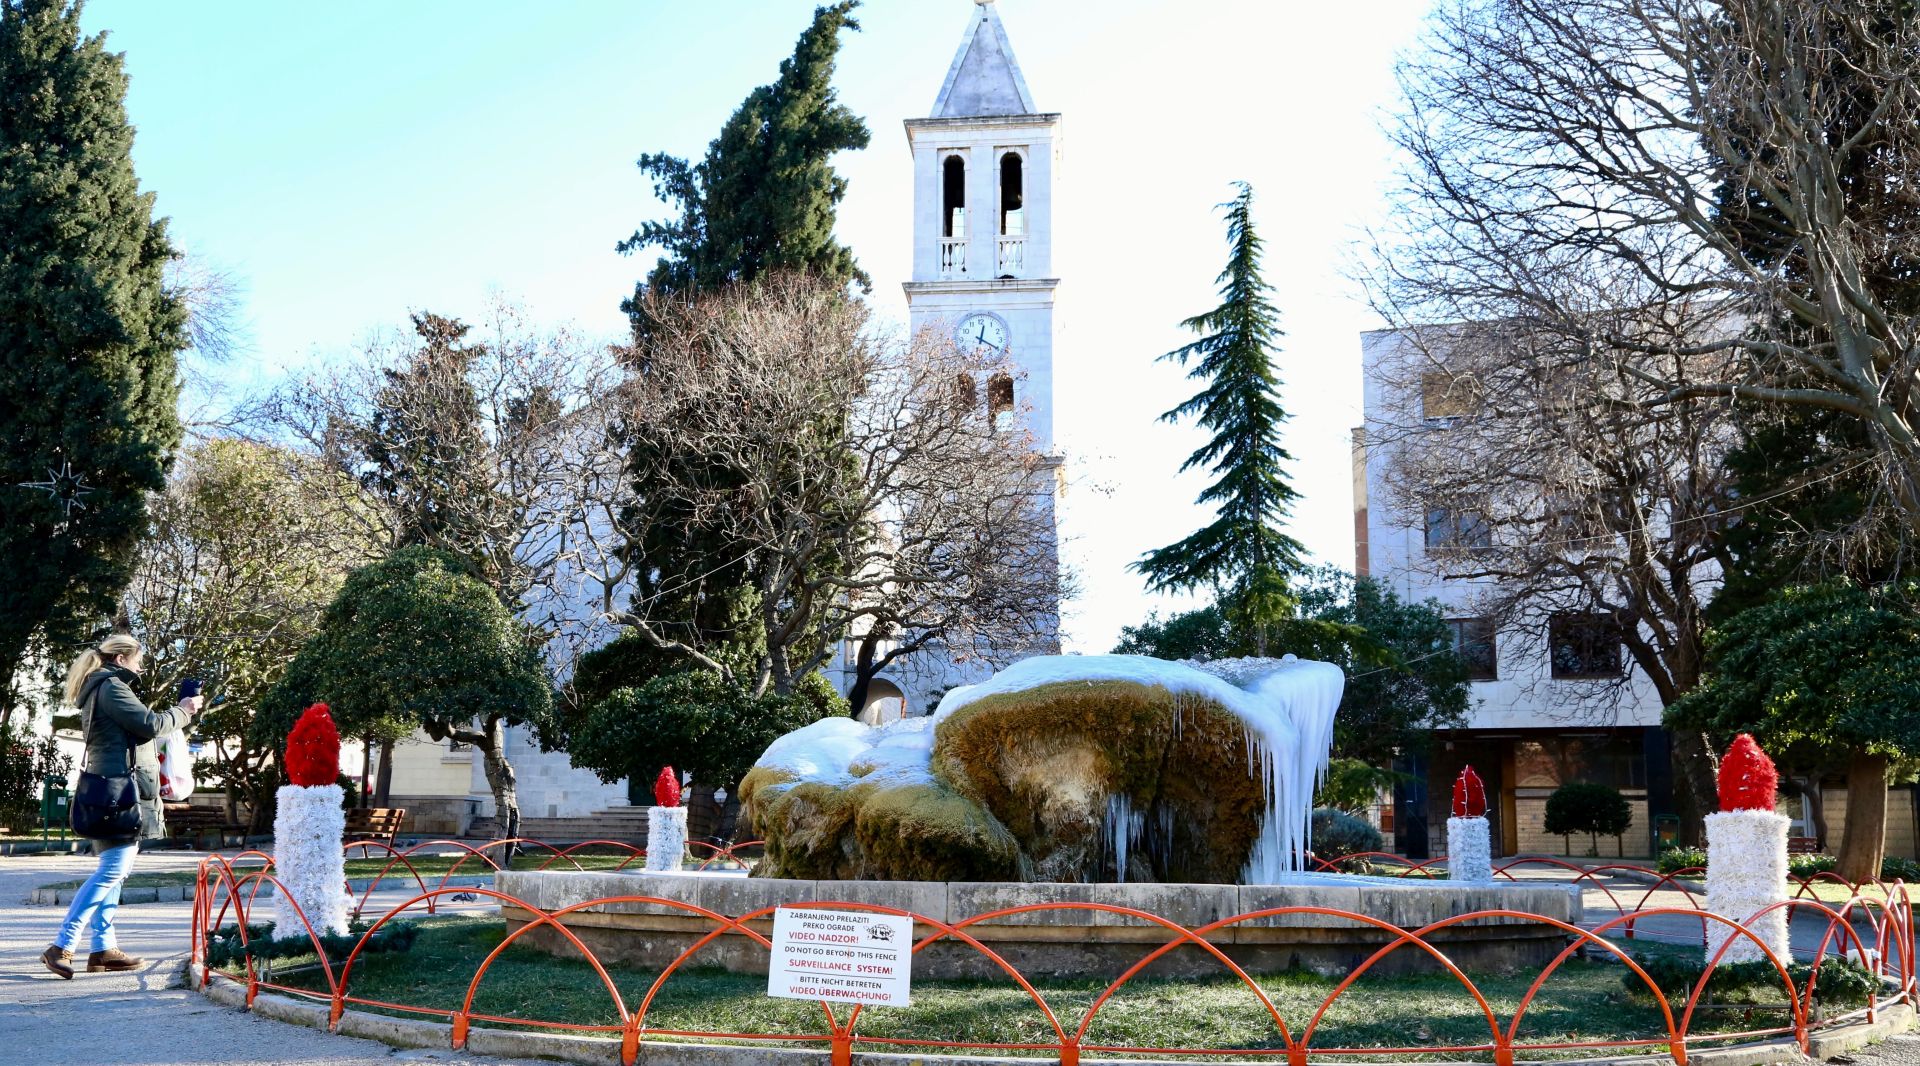 ibenik, 07.01.2016 - Zaleðena fontana ispred upne crkve van grada u ibeniku. ibenik je jutros osvanuo sa temperaturom od -7 stupnjeva celzijusa.
foto HINA/ ds